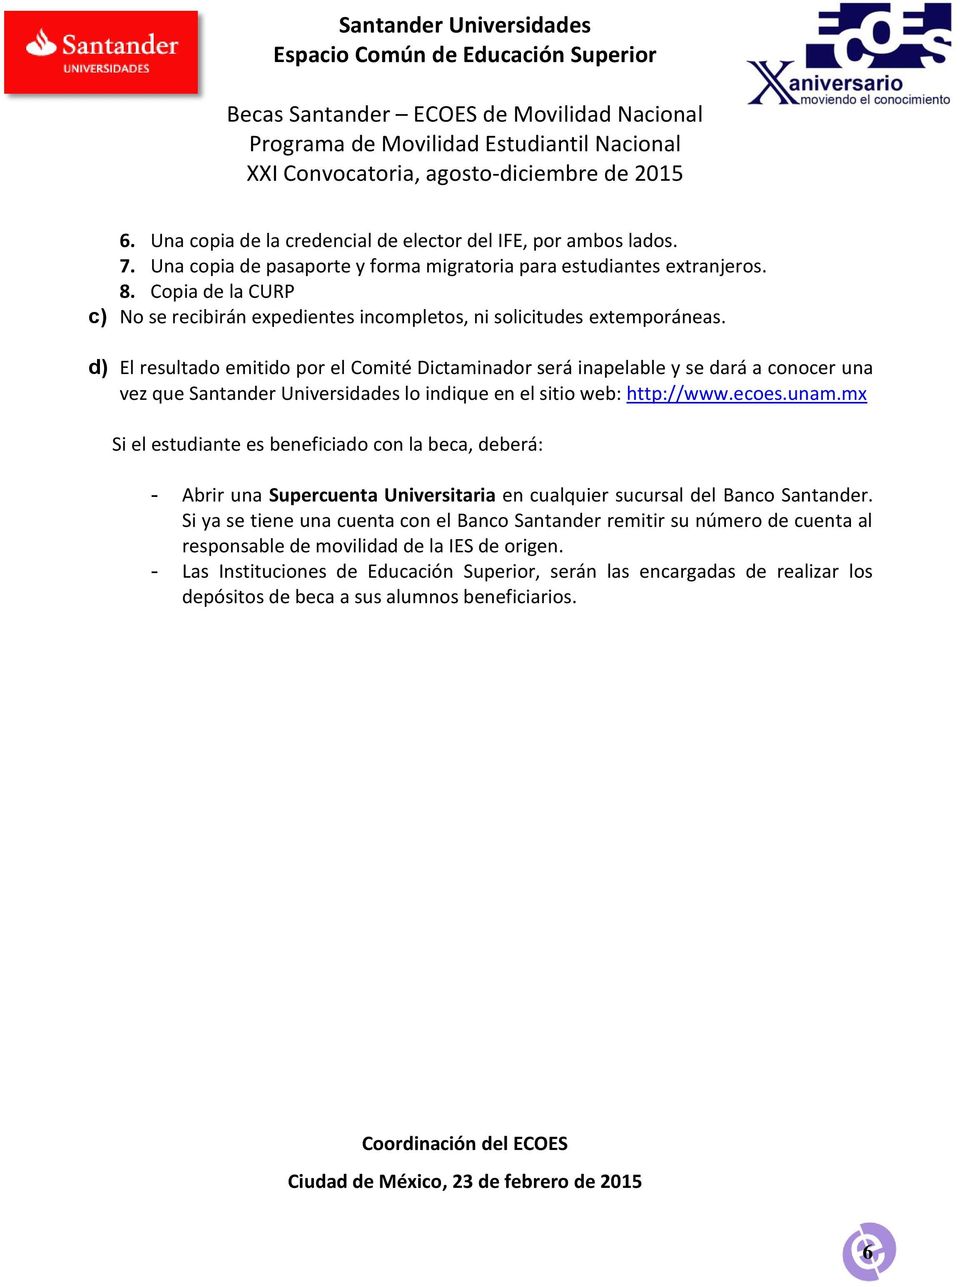 d) El resultado emitido por el Comité Dictaminador será inapelable y se dará a conocer una vez que Santander Universidades lo indique en el sitio web: http://www.ecoes.unam.